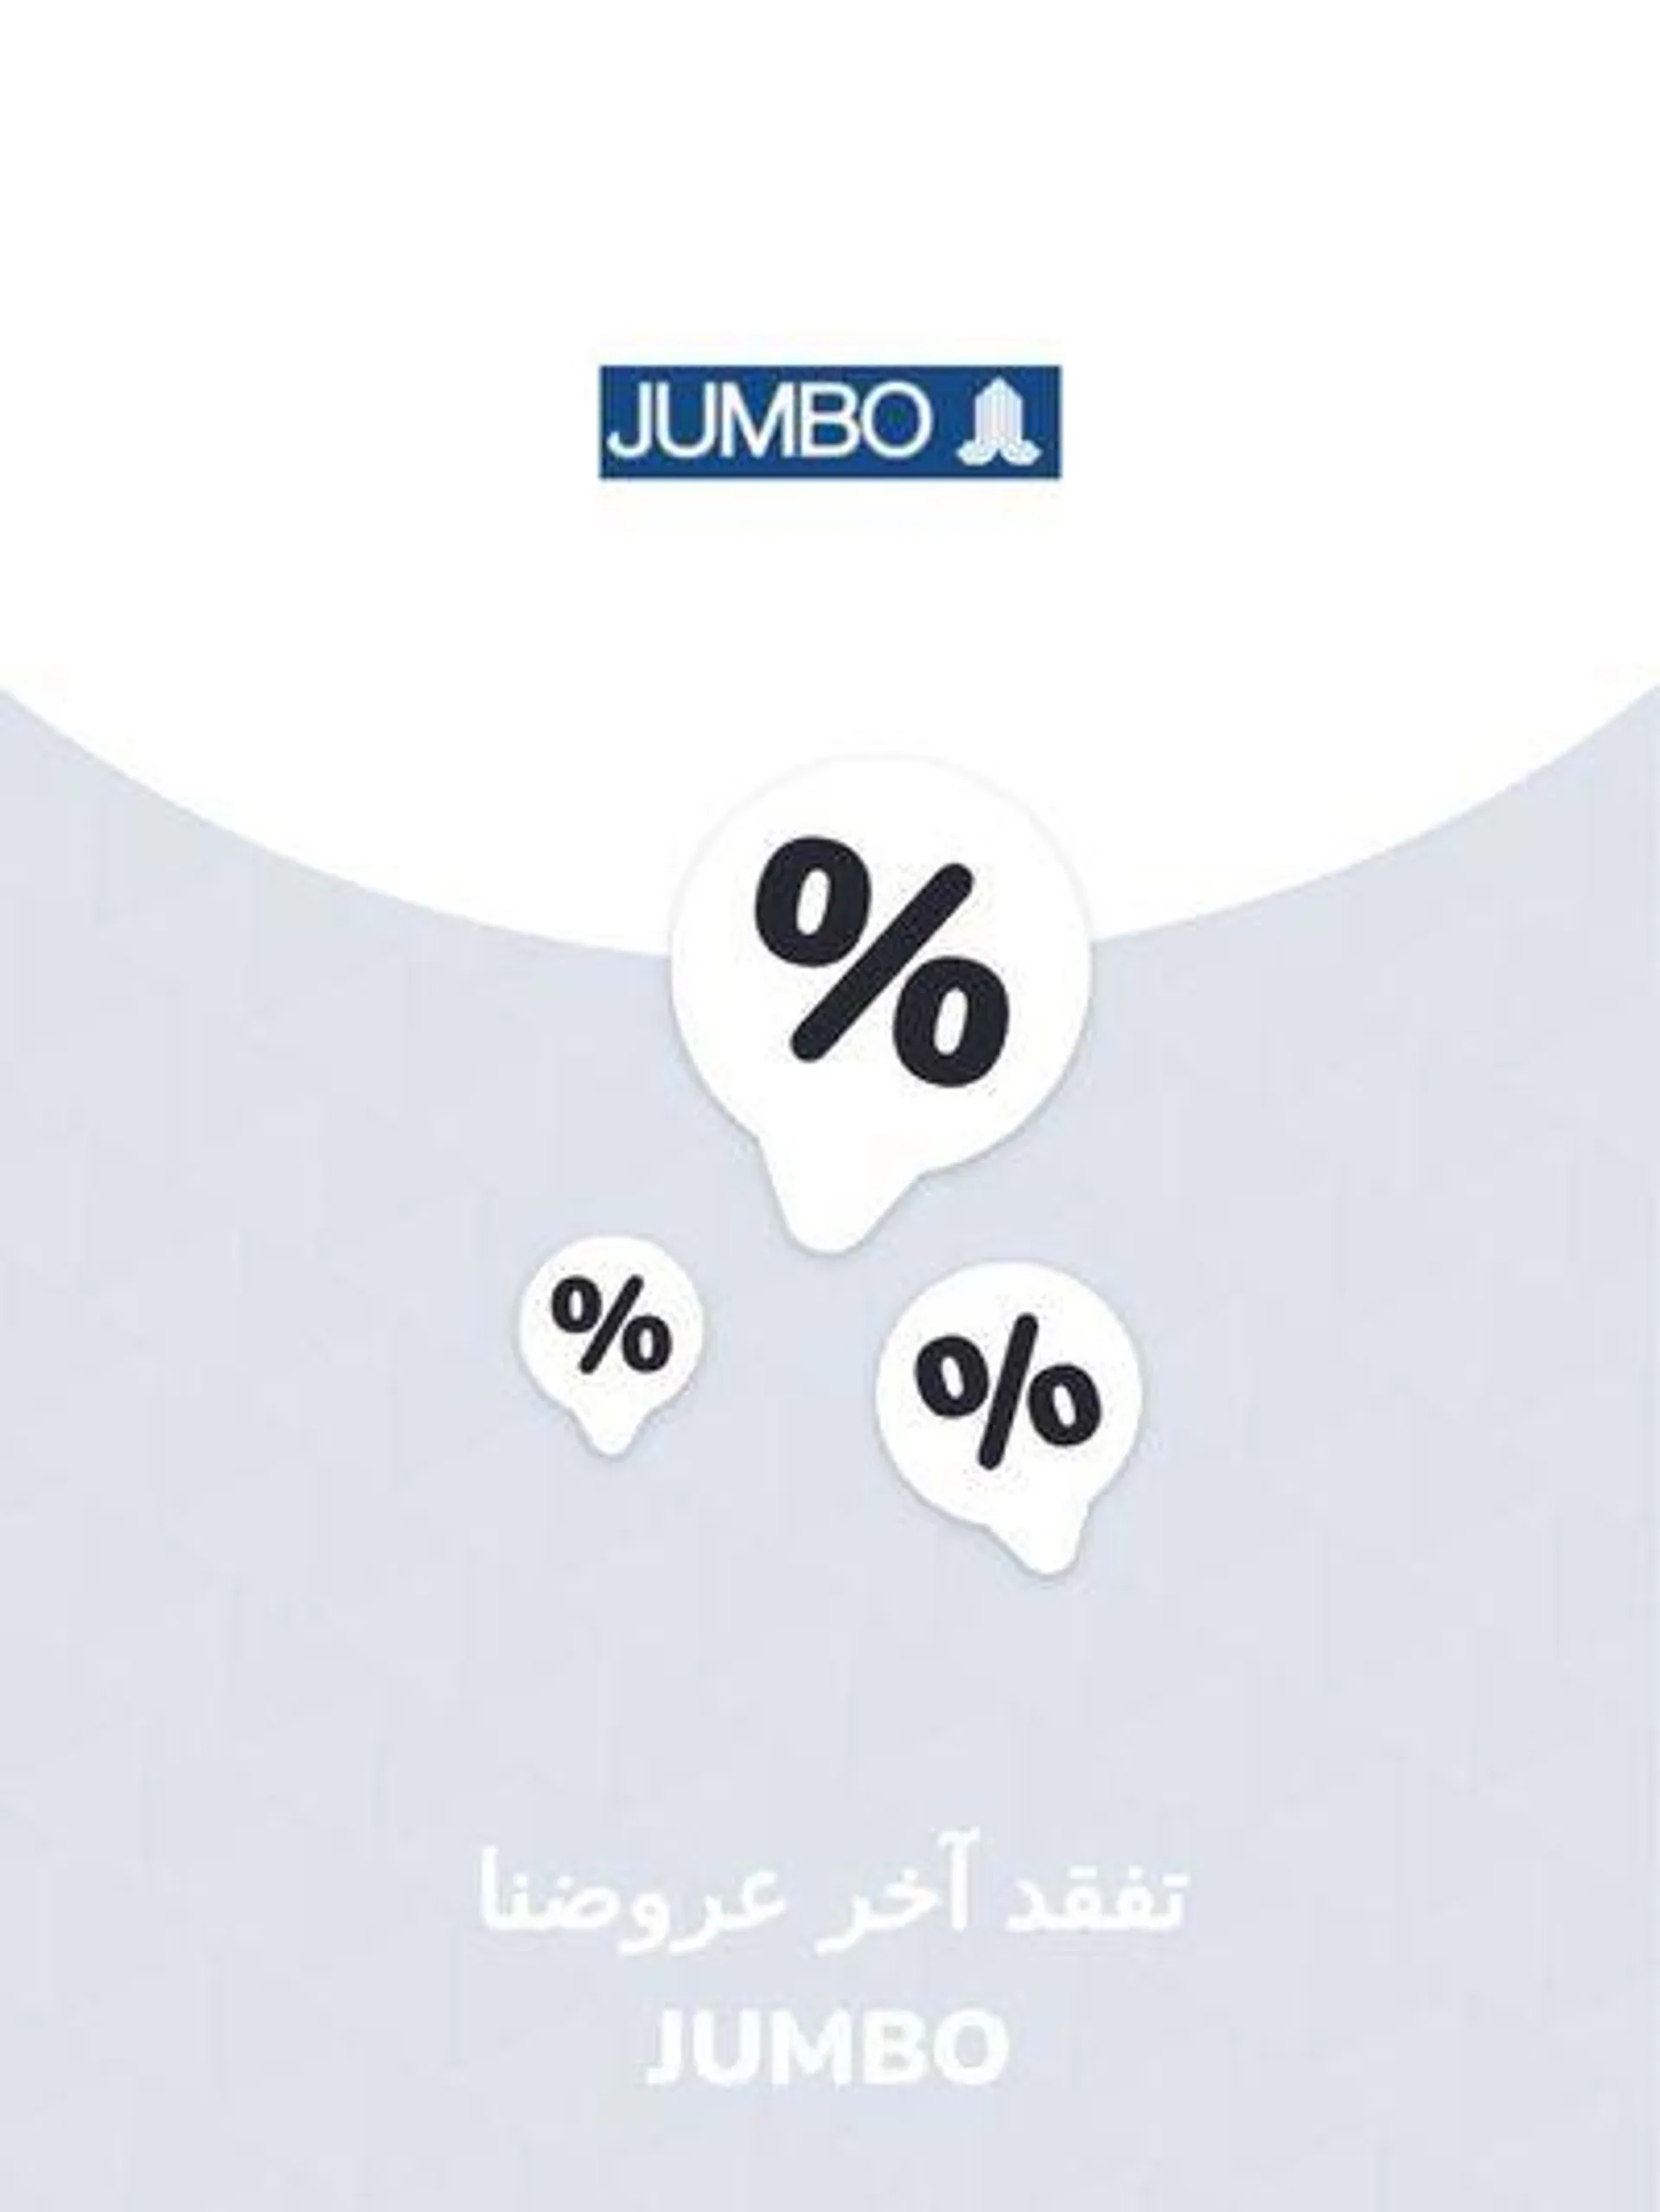 Offers Jumbo - 1